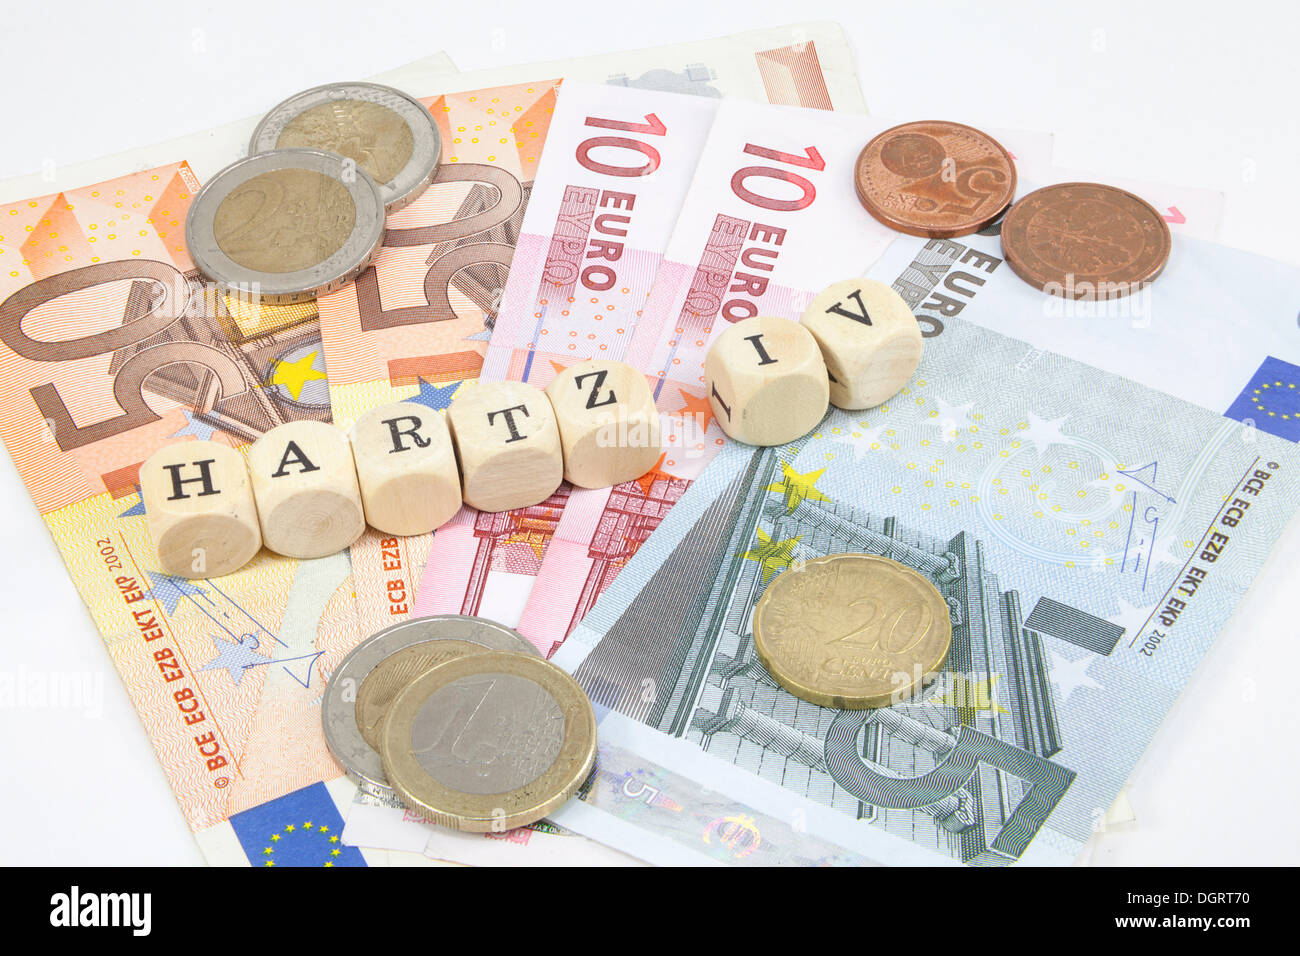 Lettera di cubi formanti la parola 'Hartz IV", Tedesco il sostegno al reddito sovvenzione, le banconote in euro, immagini simboliche per Hartz IV PAGAMENTI Foto Stock